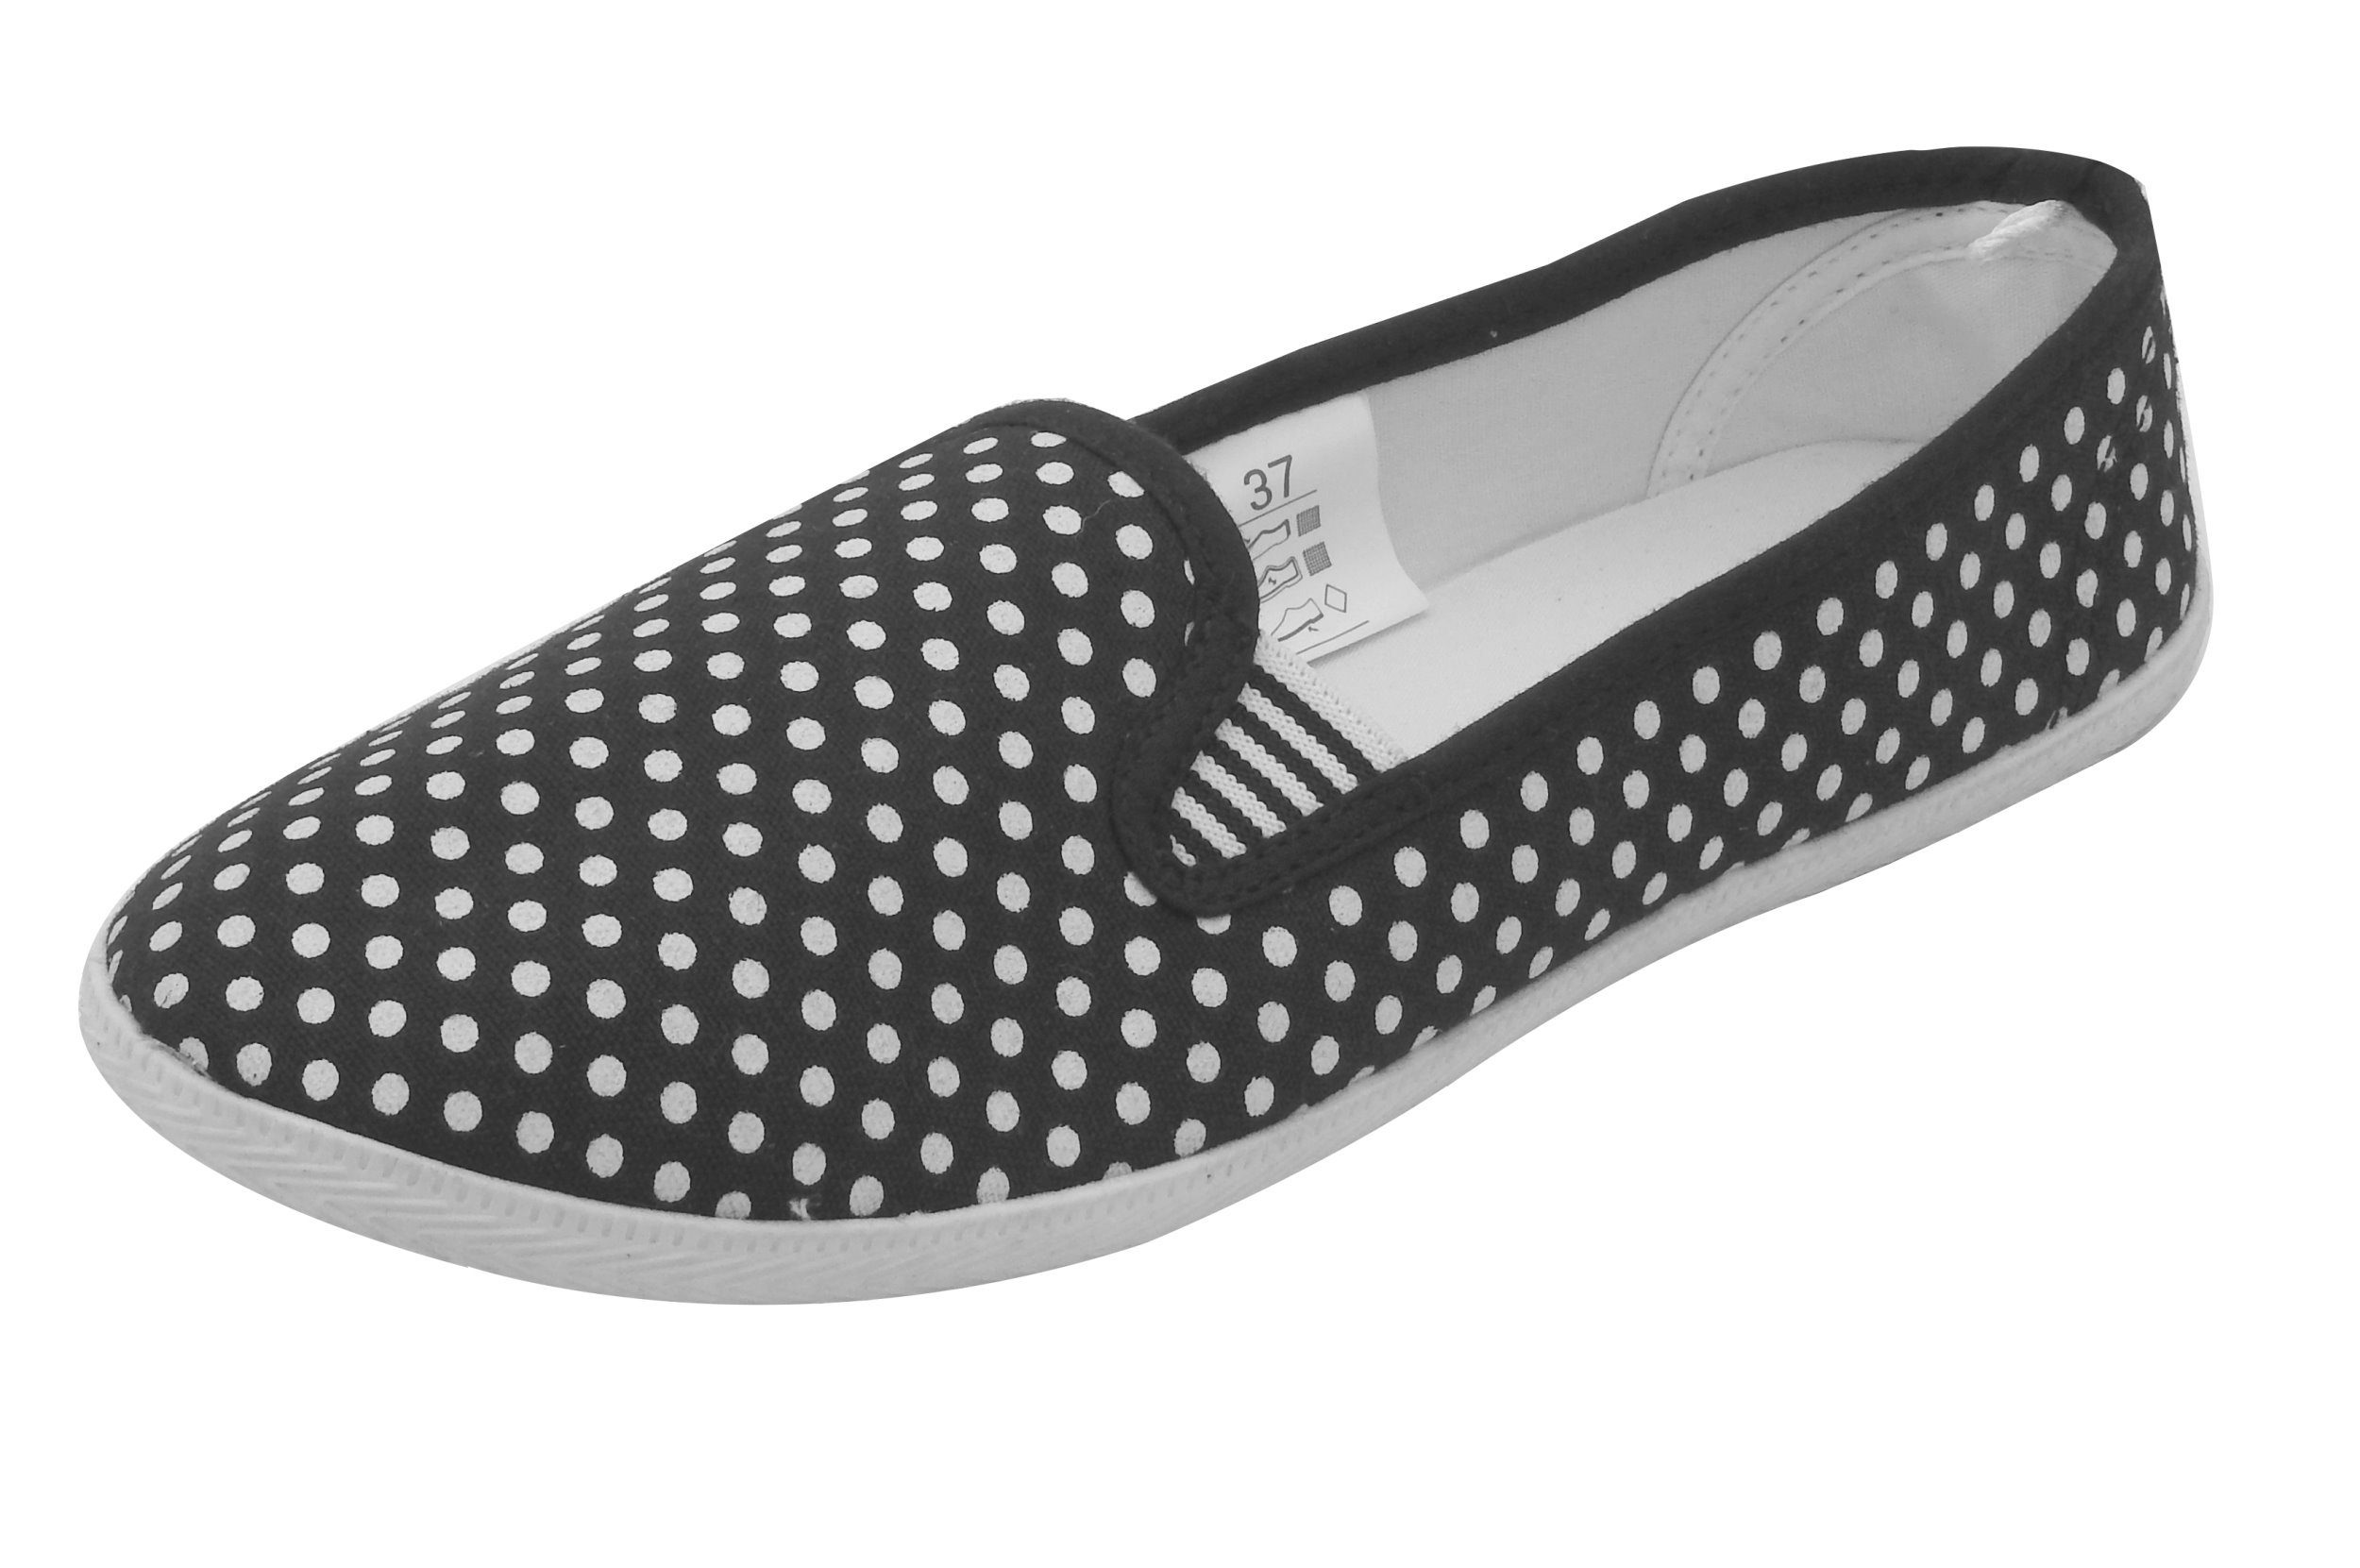 Schuhe Slipper Slip Sneaker Loafer On dynamic24 Schwarz Freizeitschuhe Damen Stoff Flats Canvas